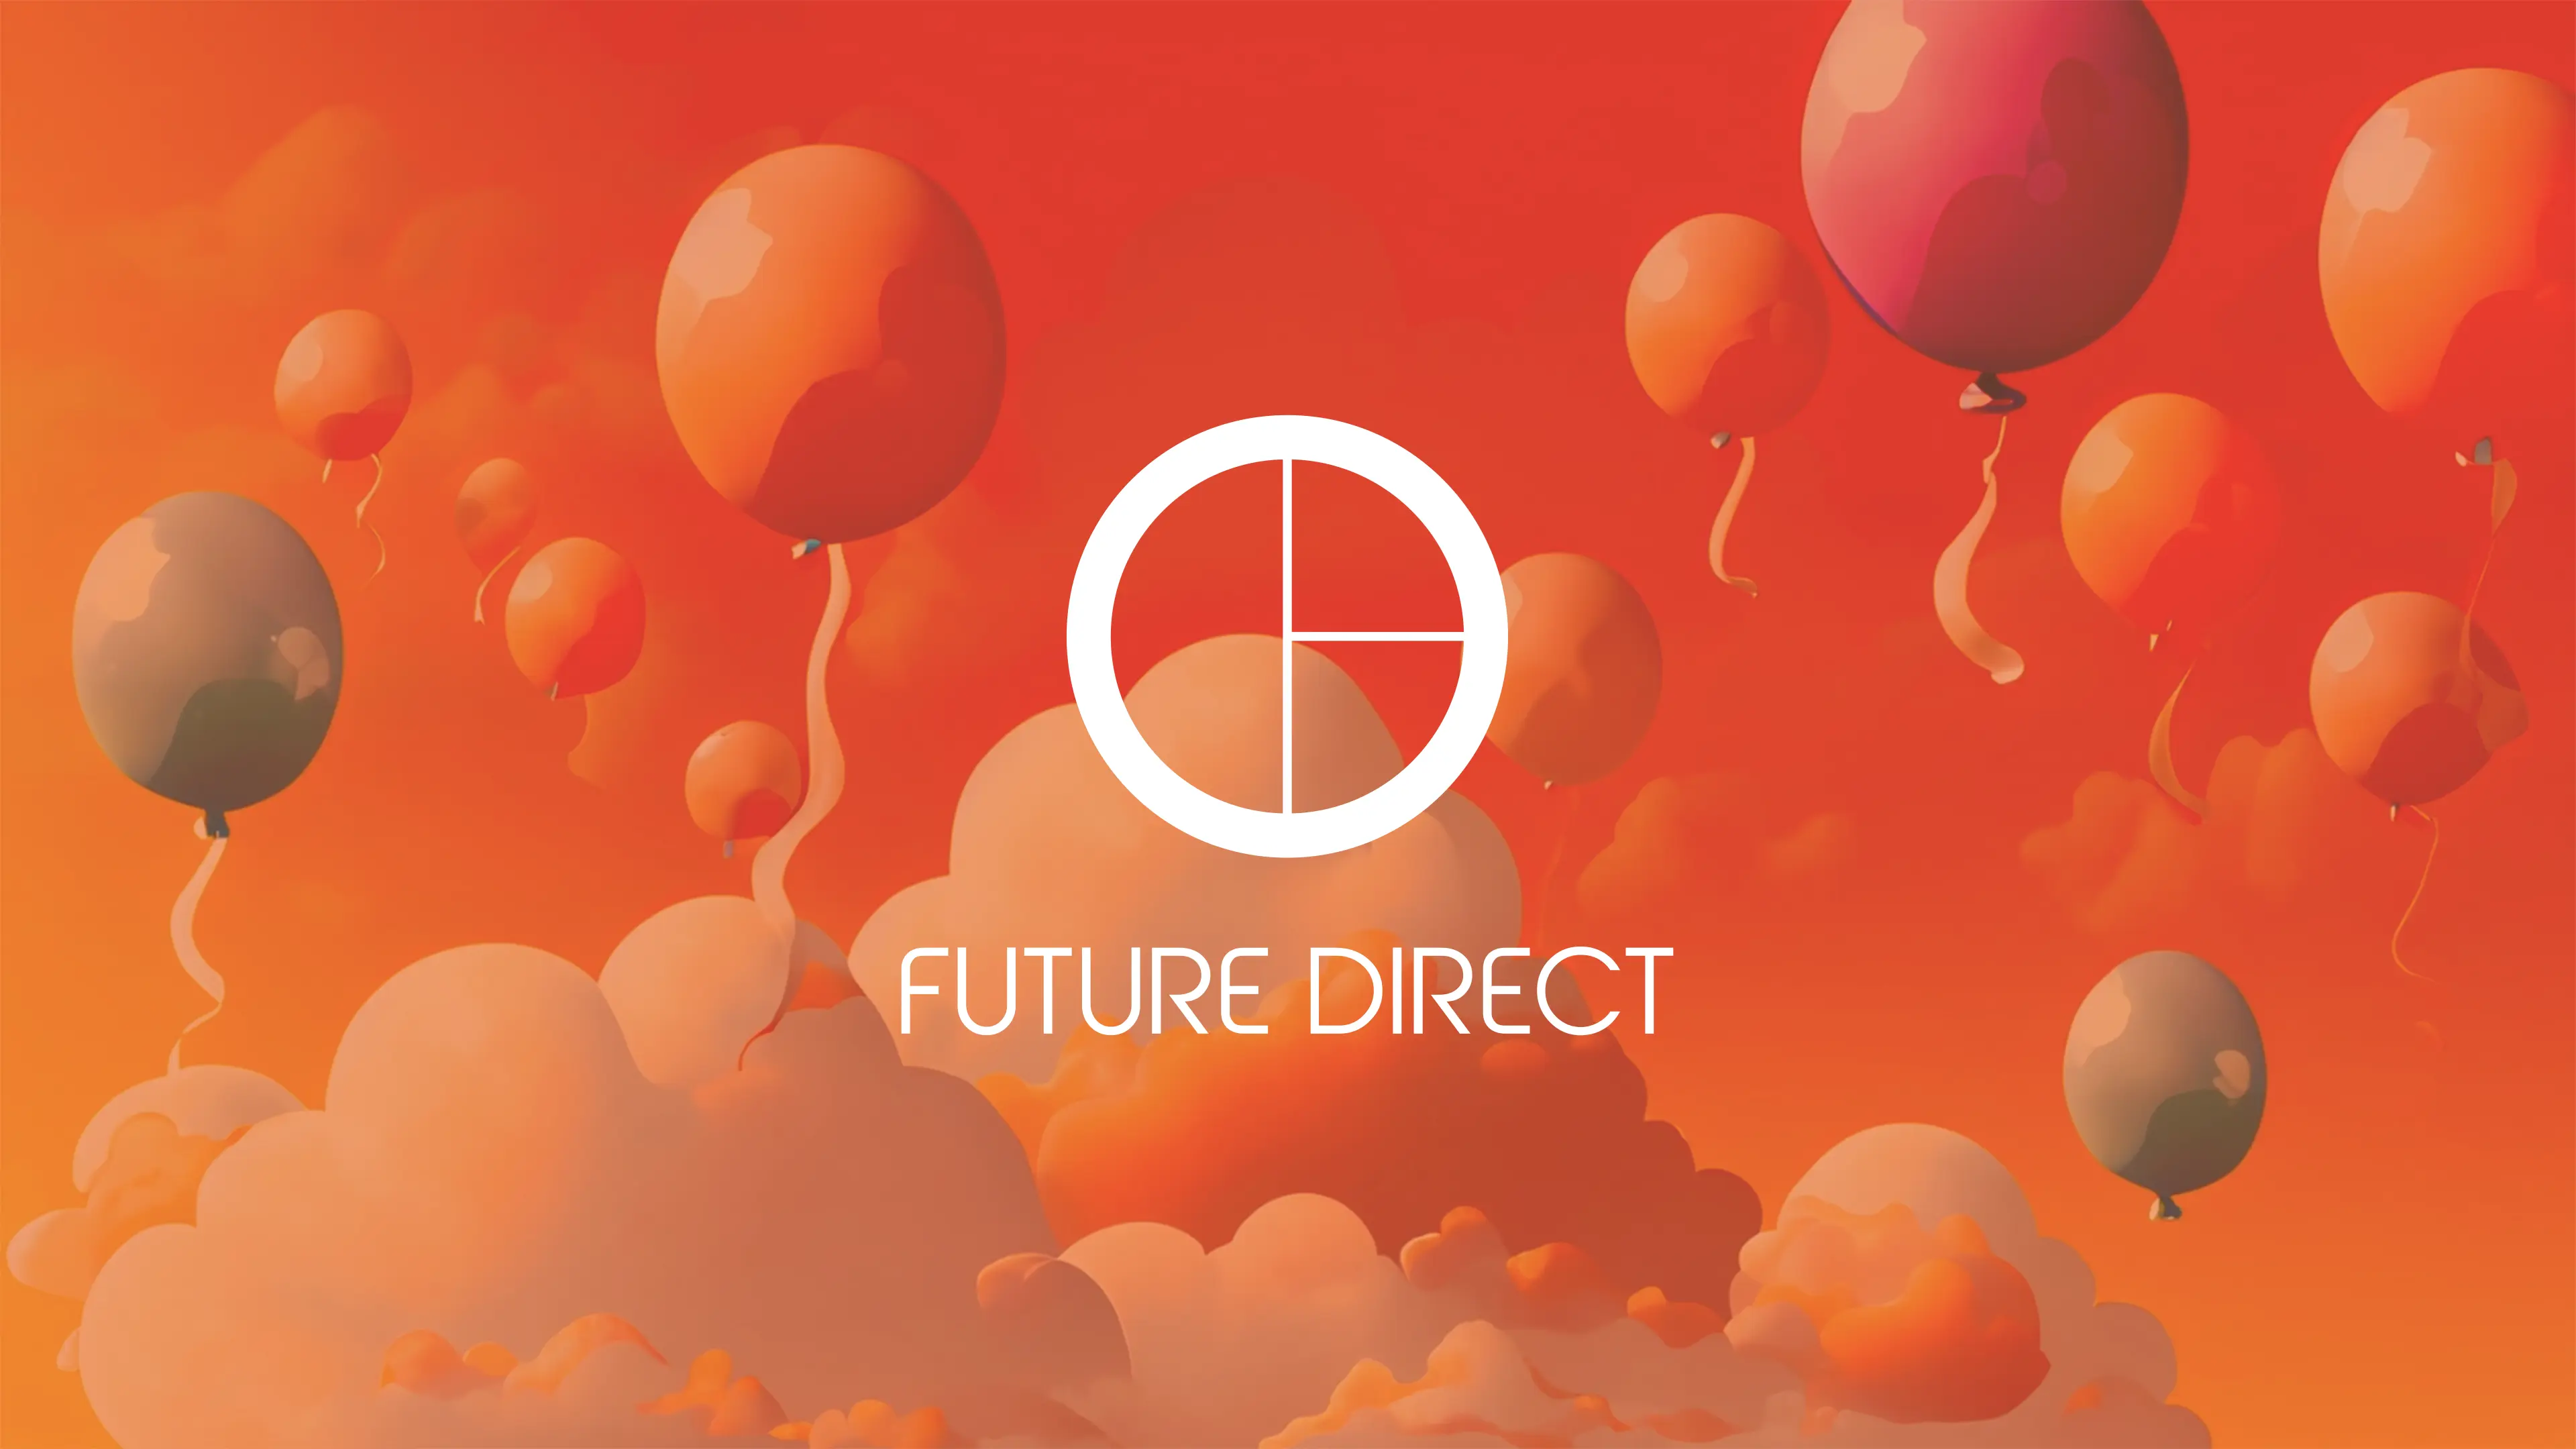 FUTURE DIRECT Co., Ltd.